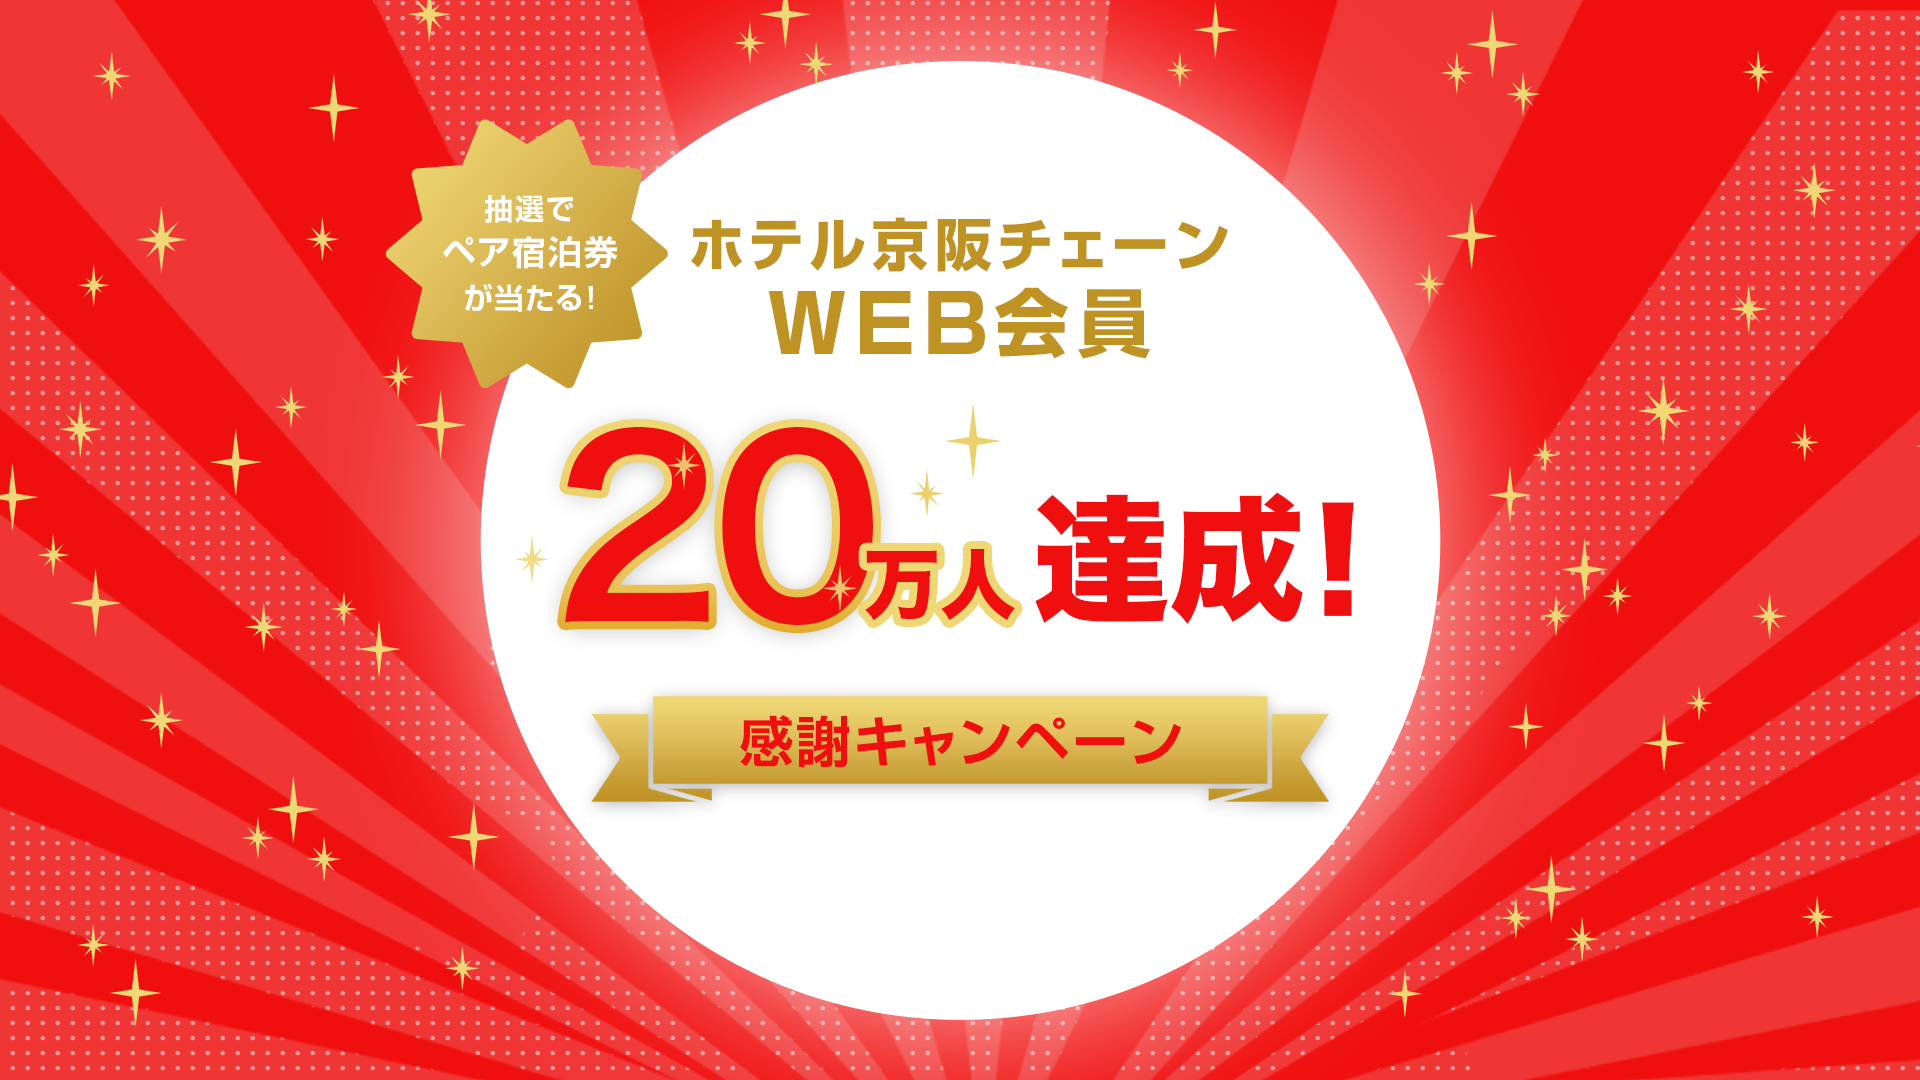 株式会社 ホテル京阪　WEB会員20万人達成記念
「２０万人感謝キャンペーン」を実施します